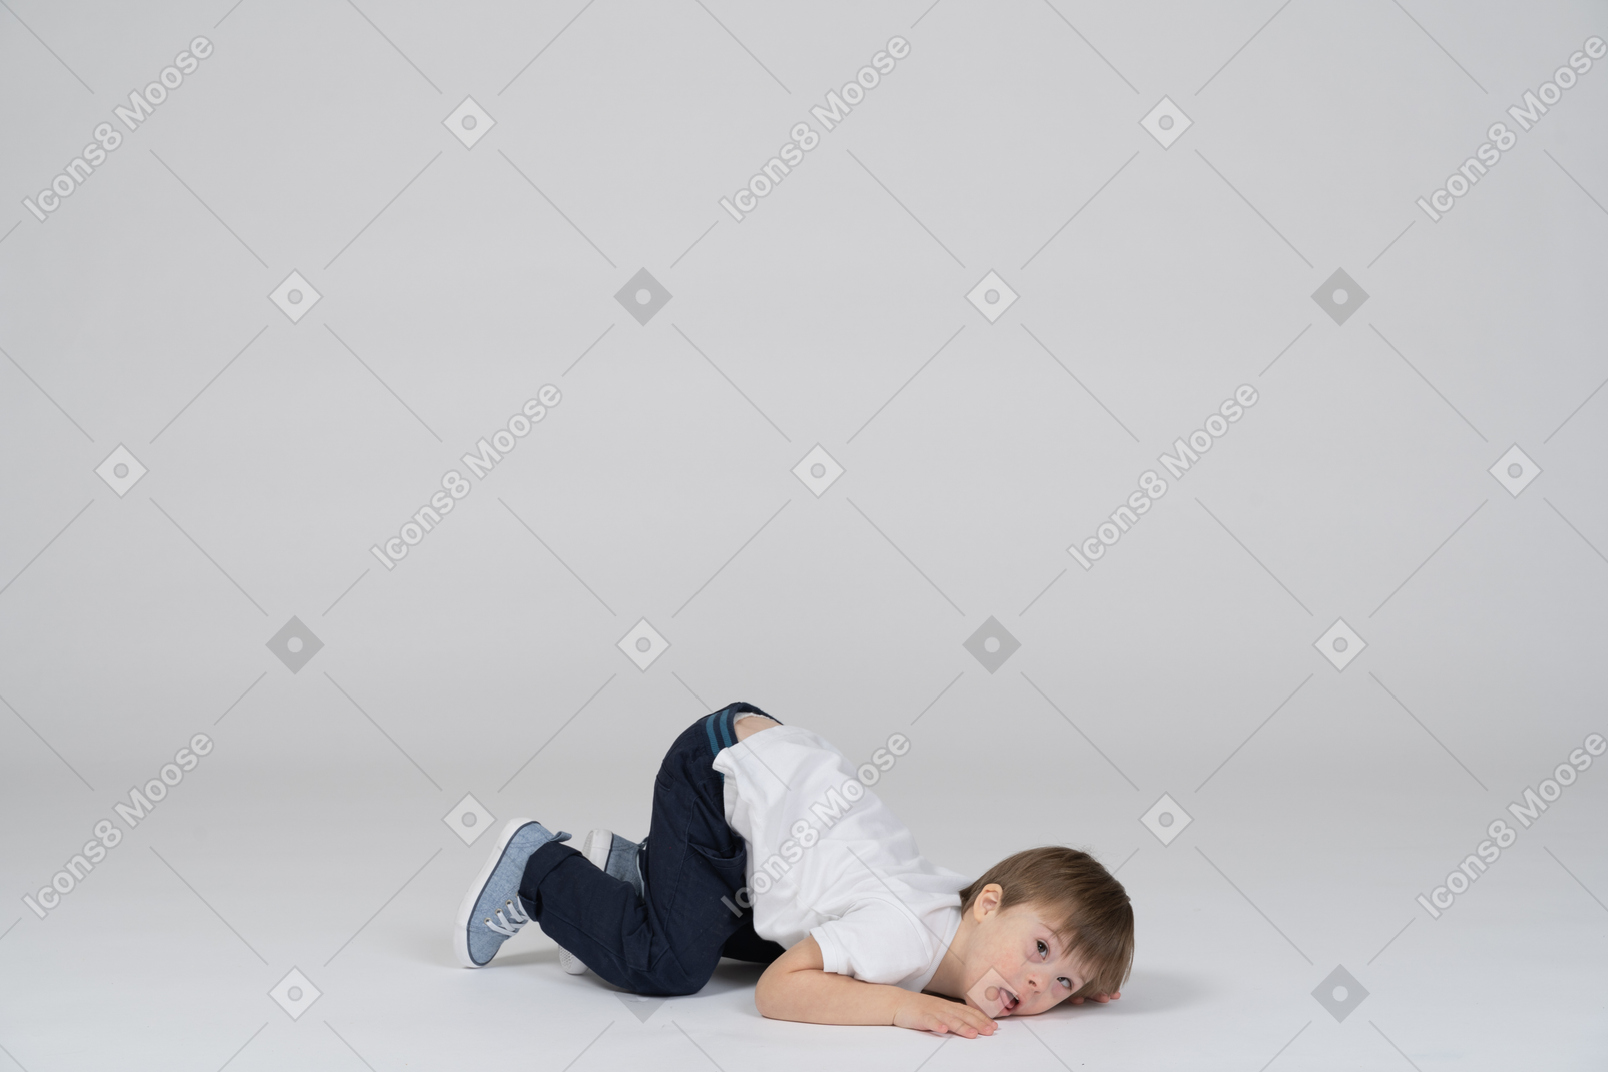 Petit garçon couché face contre terre